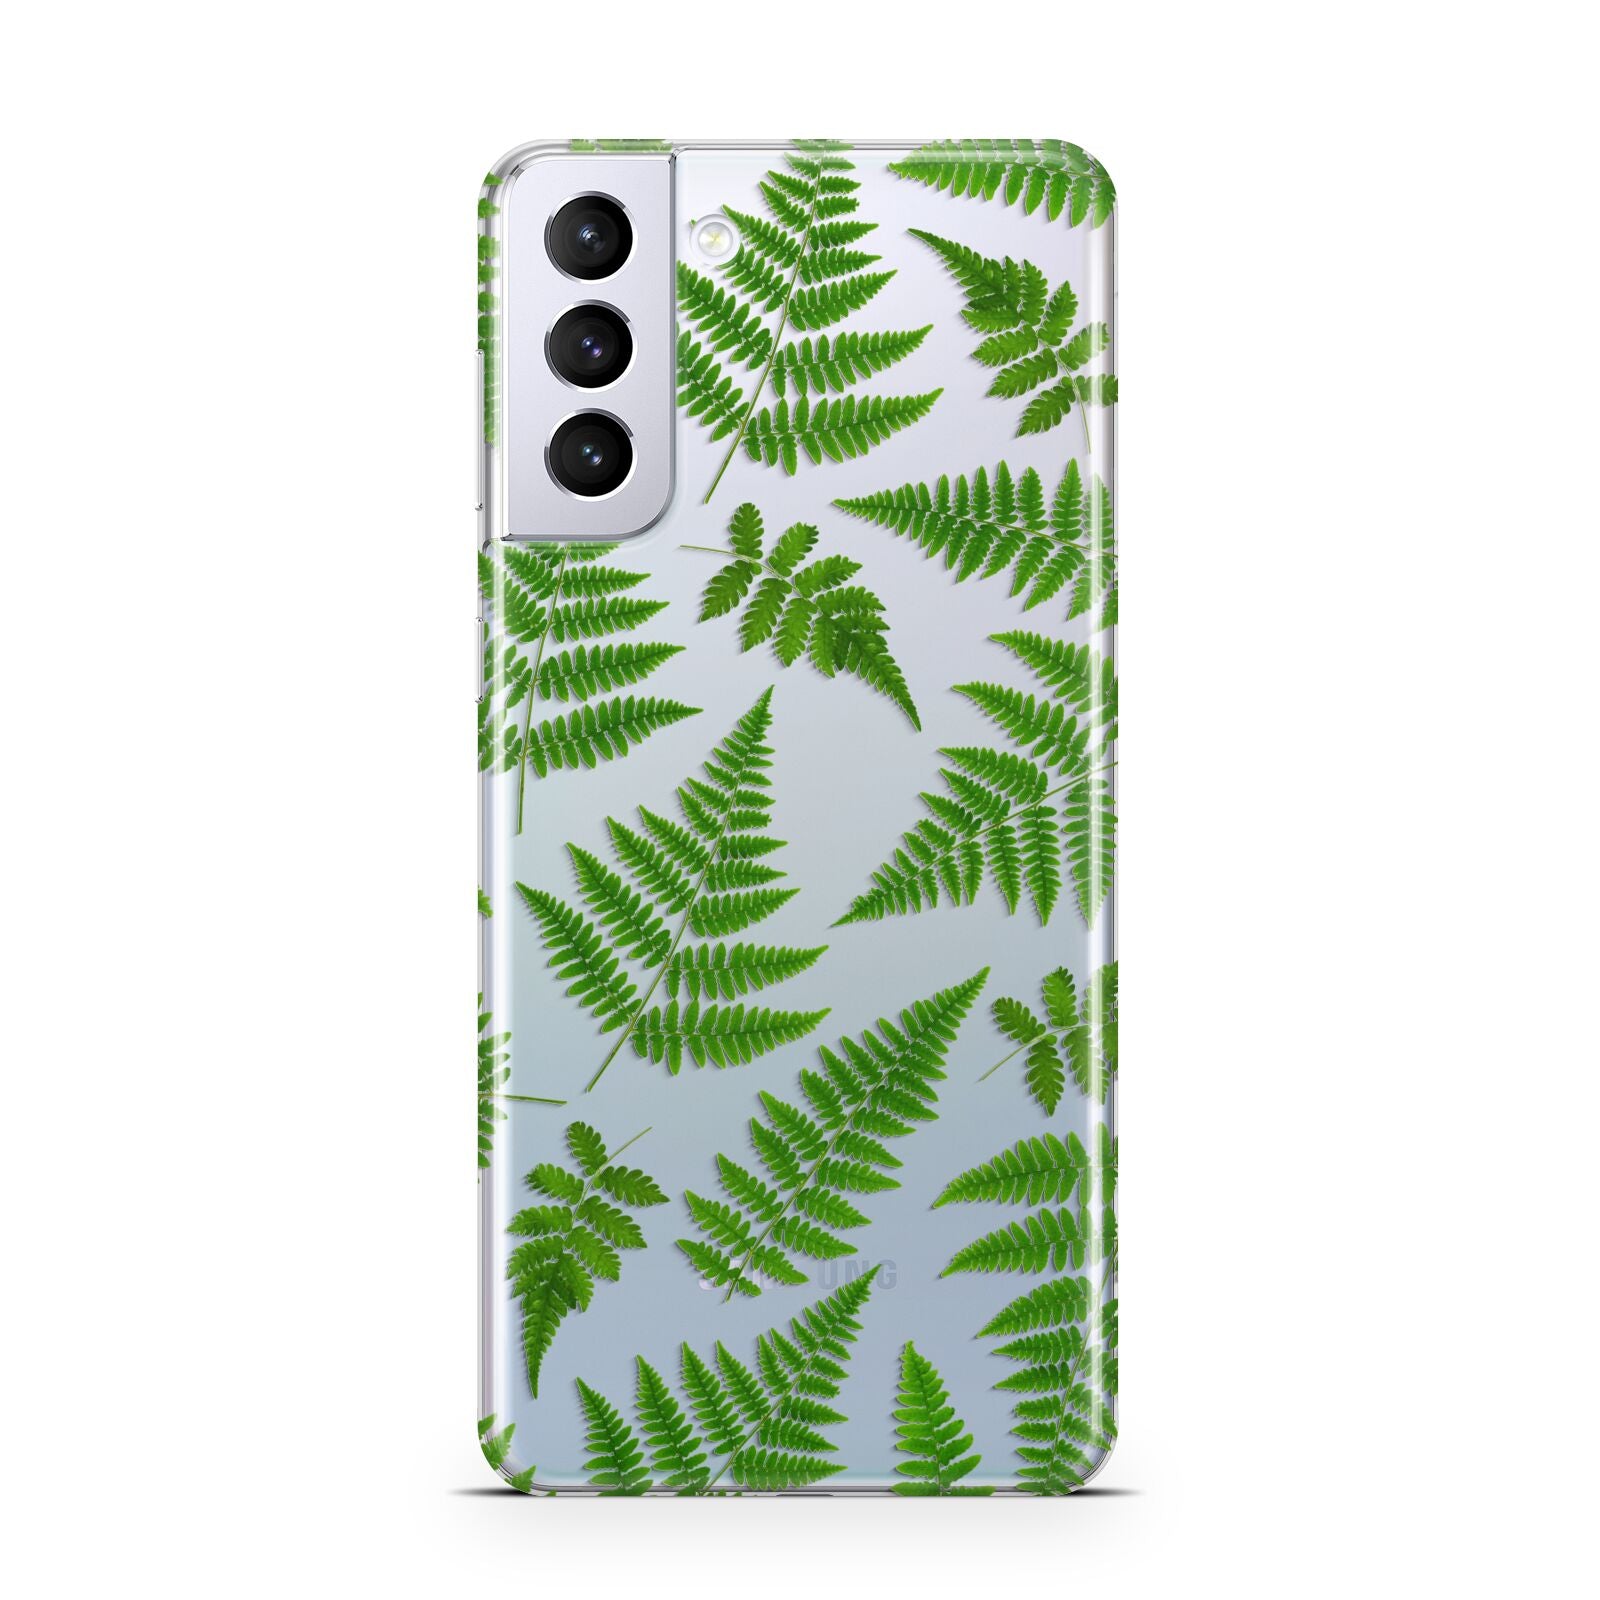 Fern Leaf Samsung S21 Plus Phone Case